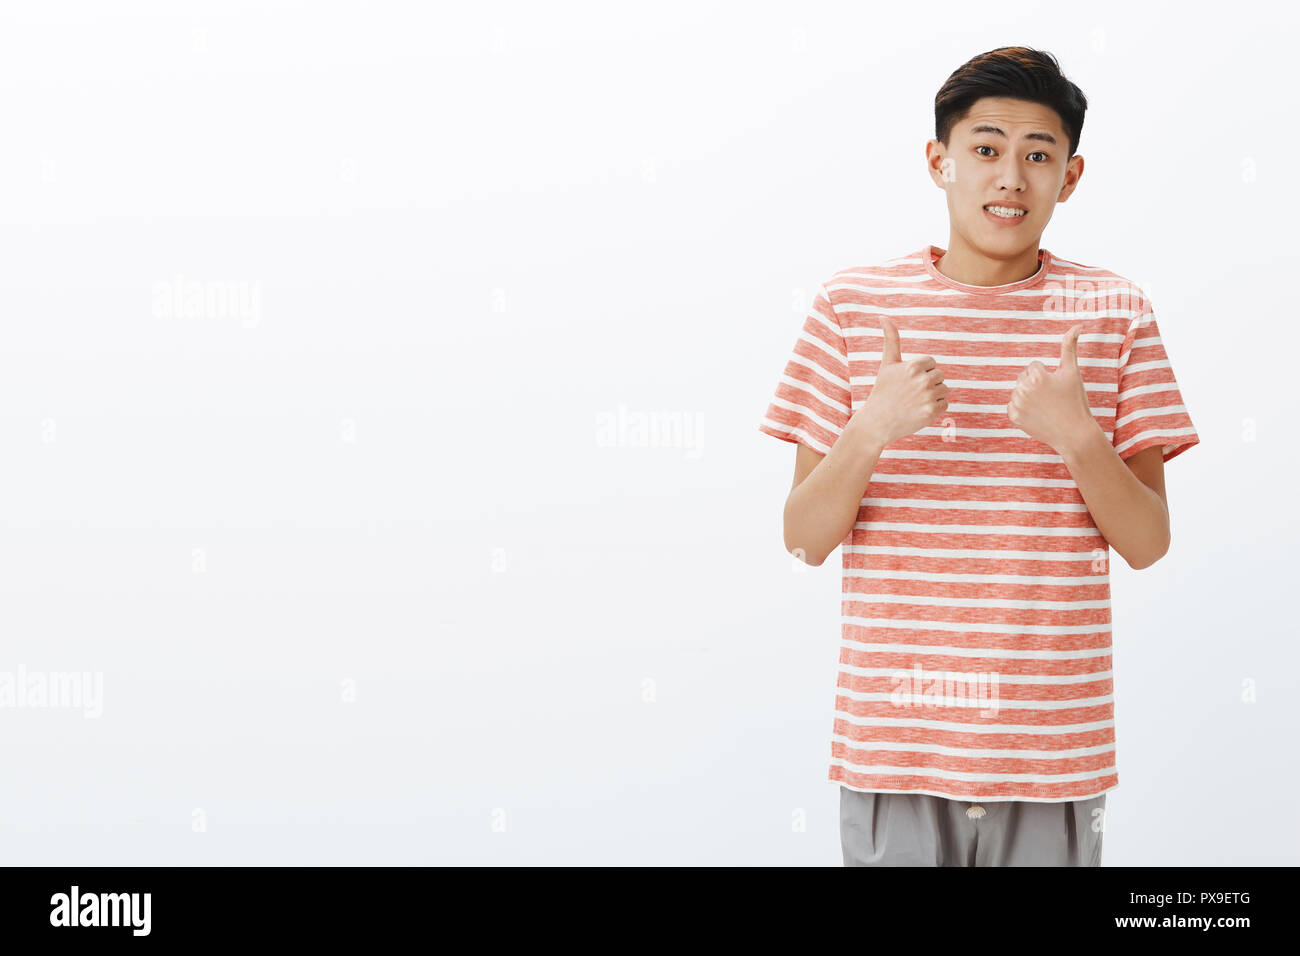 Bene, immagino. Ritratto di sicuro scomoda attraente giovane uomo asiatico in striped t-shirt rendendo stretta ucertain sorriso e mostrando i pollici fino gesto come se accetta o come idea, in posa su uno sfondo grigio Foto Stock